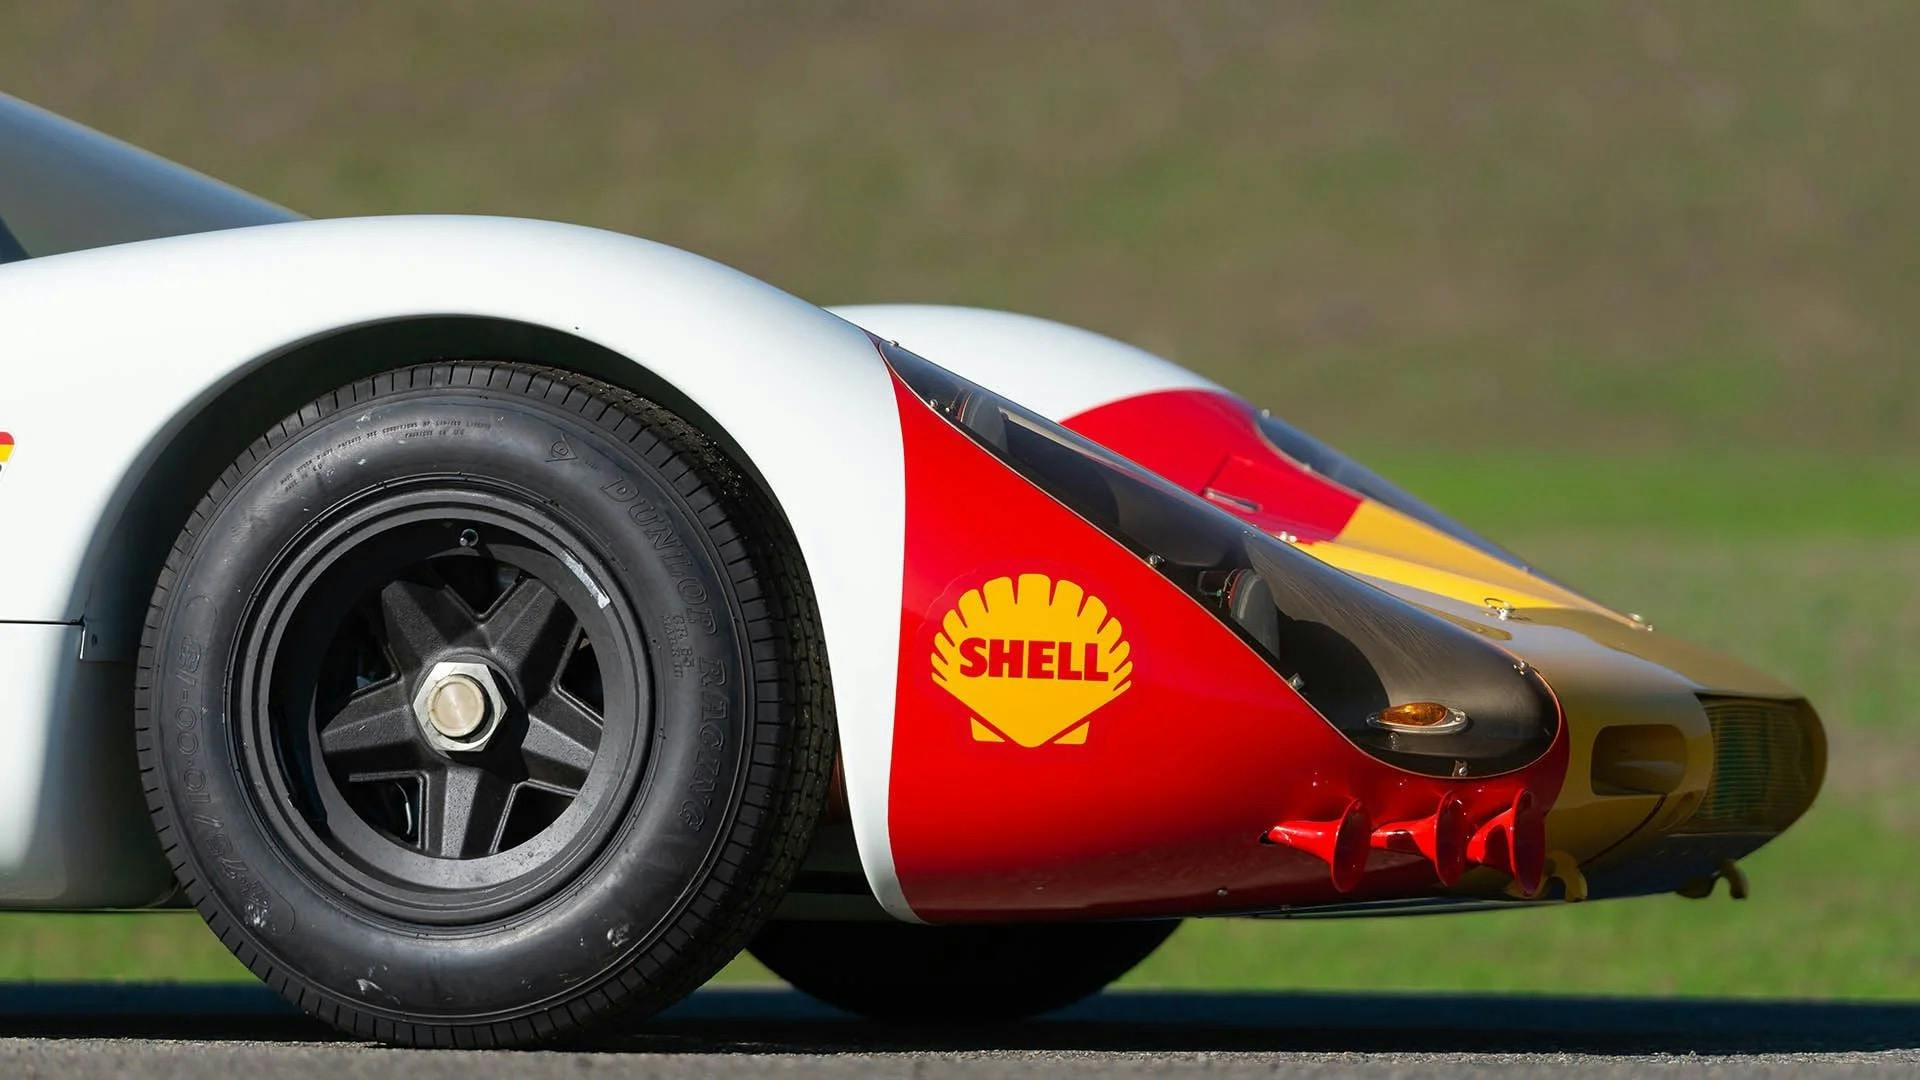 1968 Porsche 907 K shell